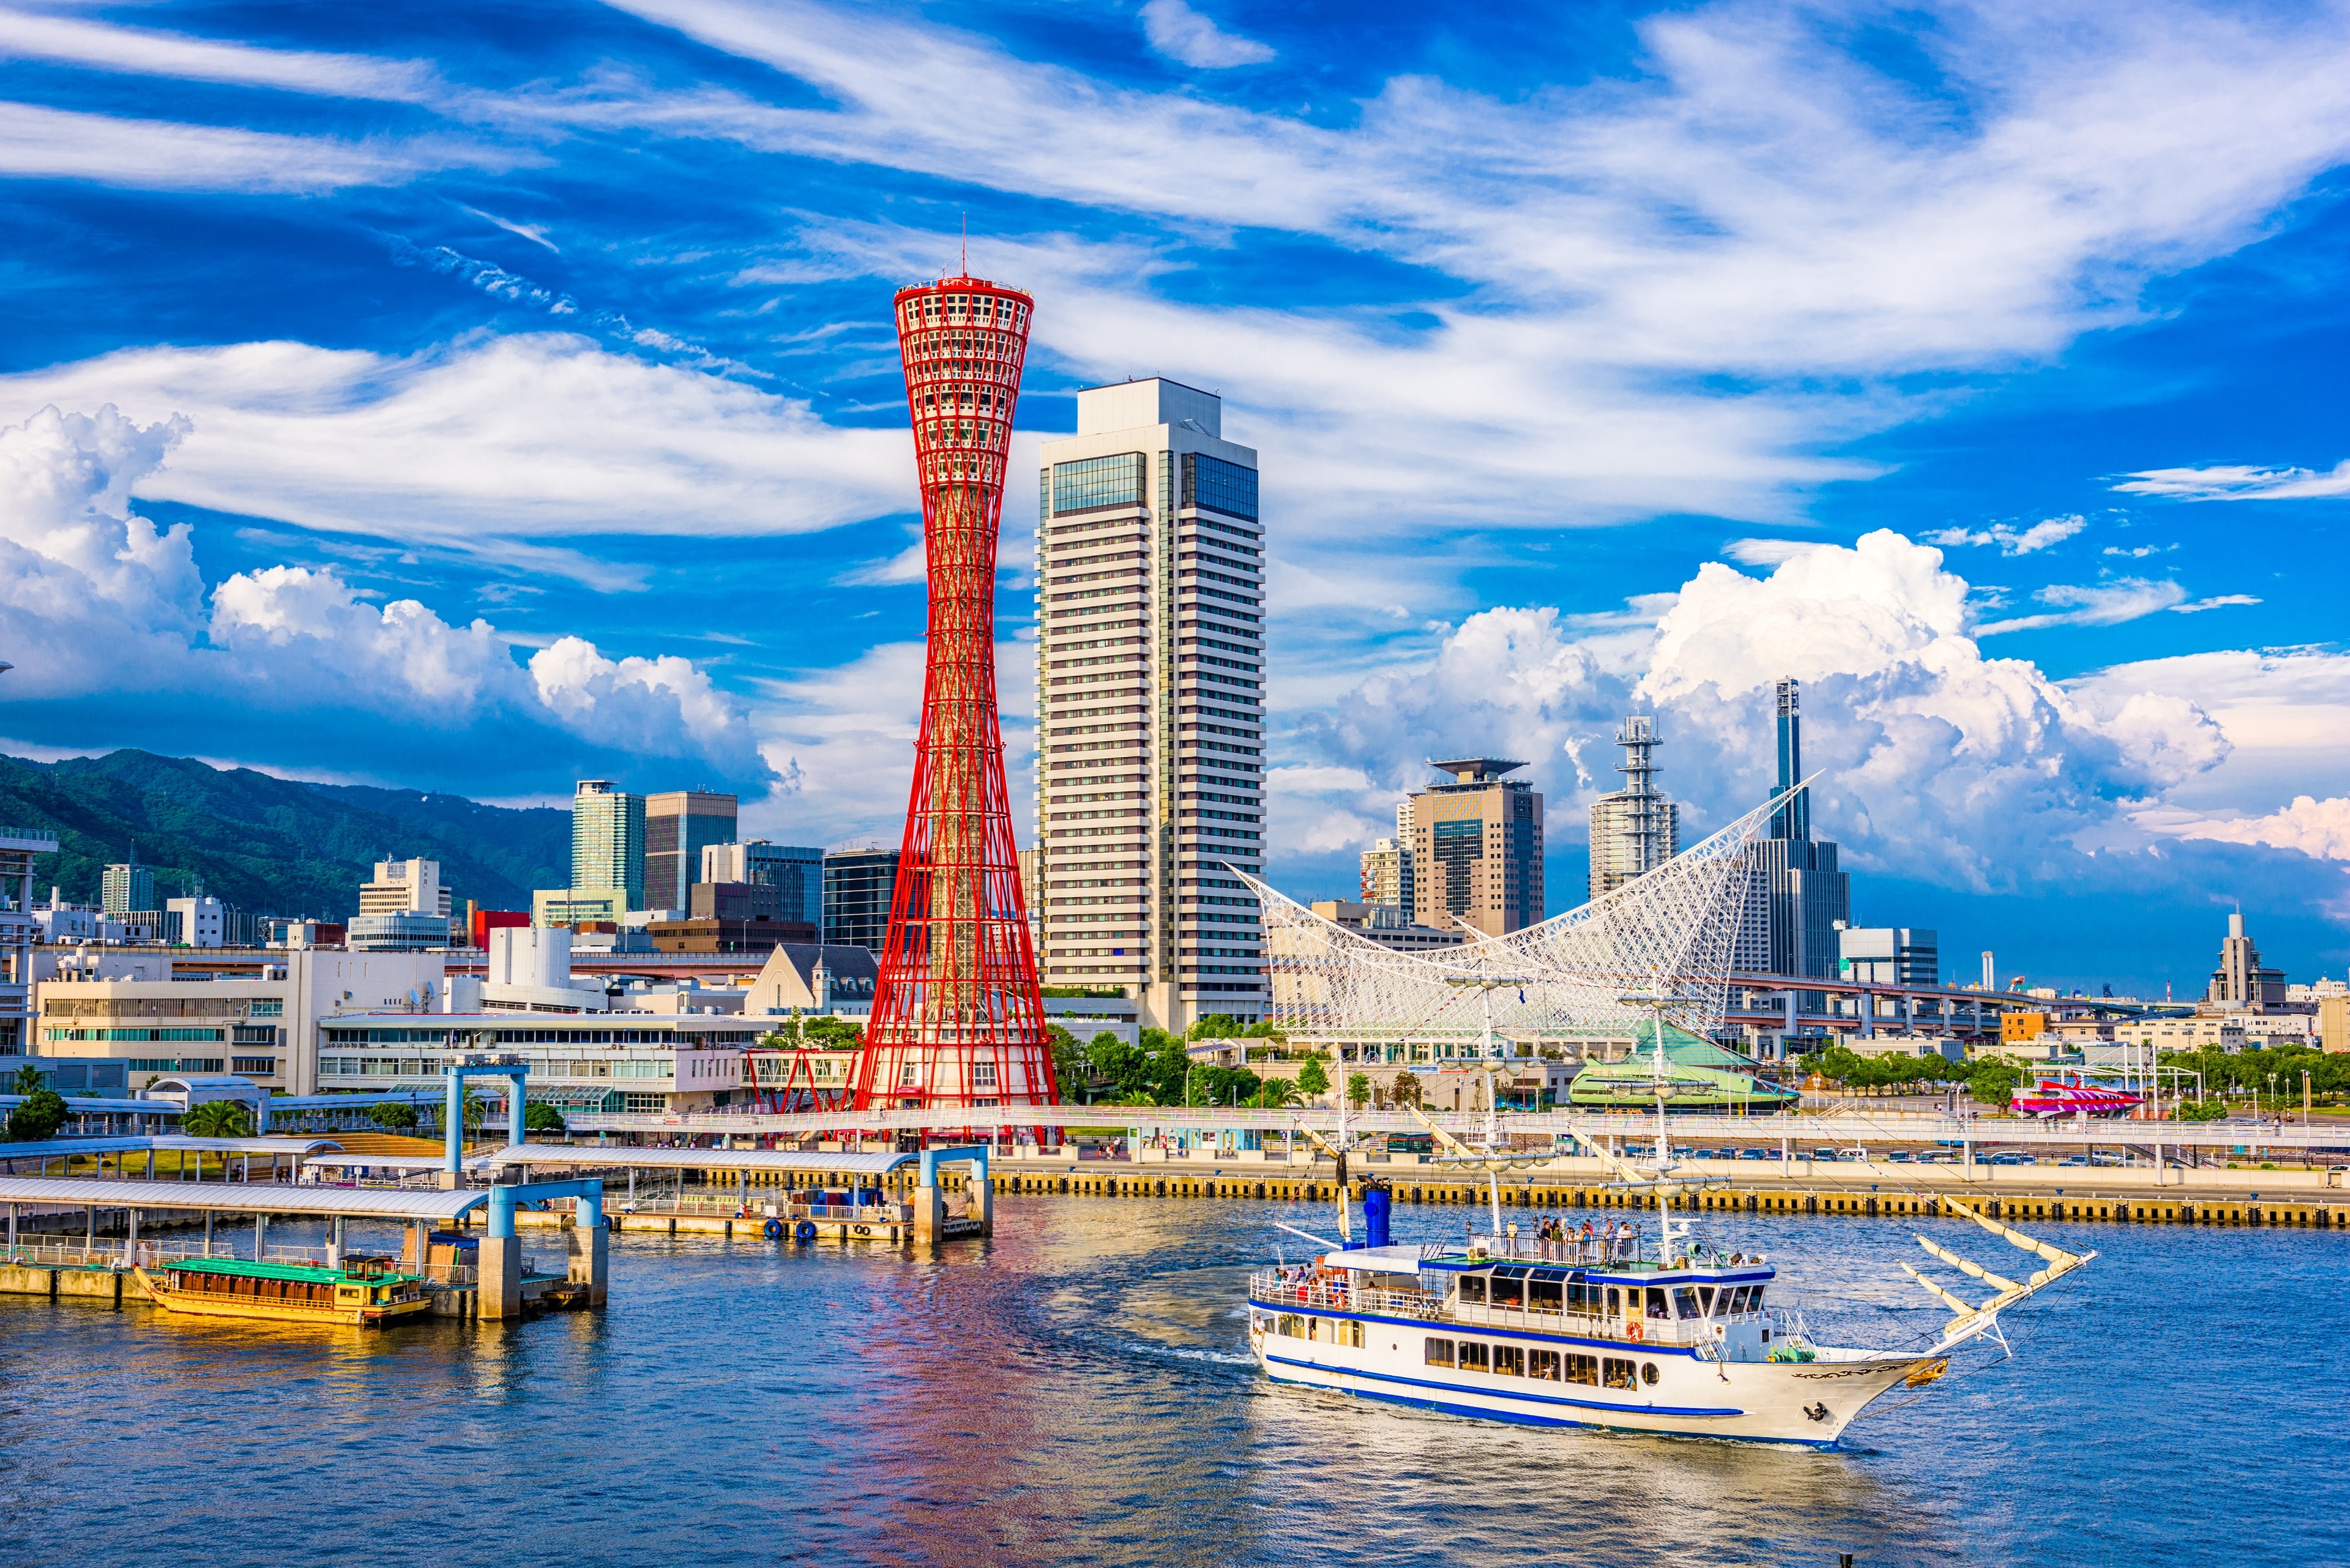 Tháp Kobe tại Trung tâm Thành phố Kobe | Expedia